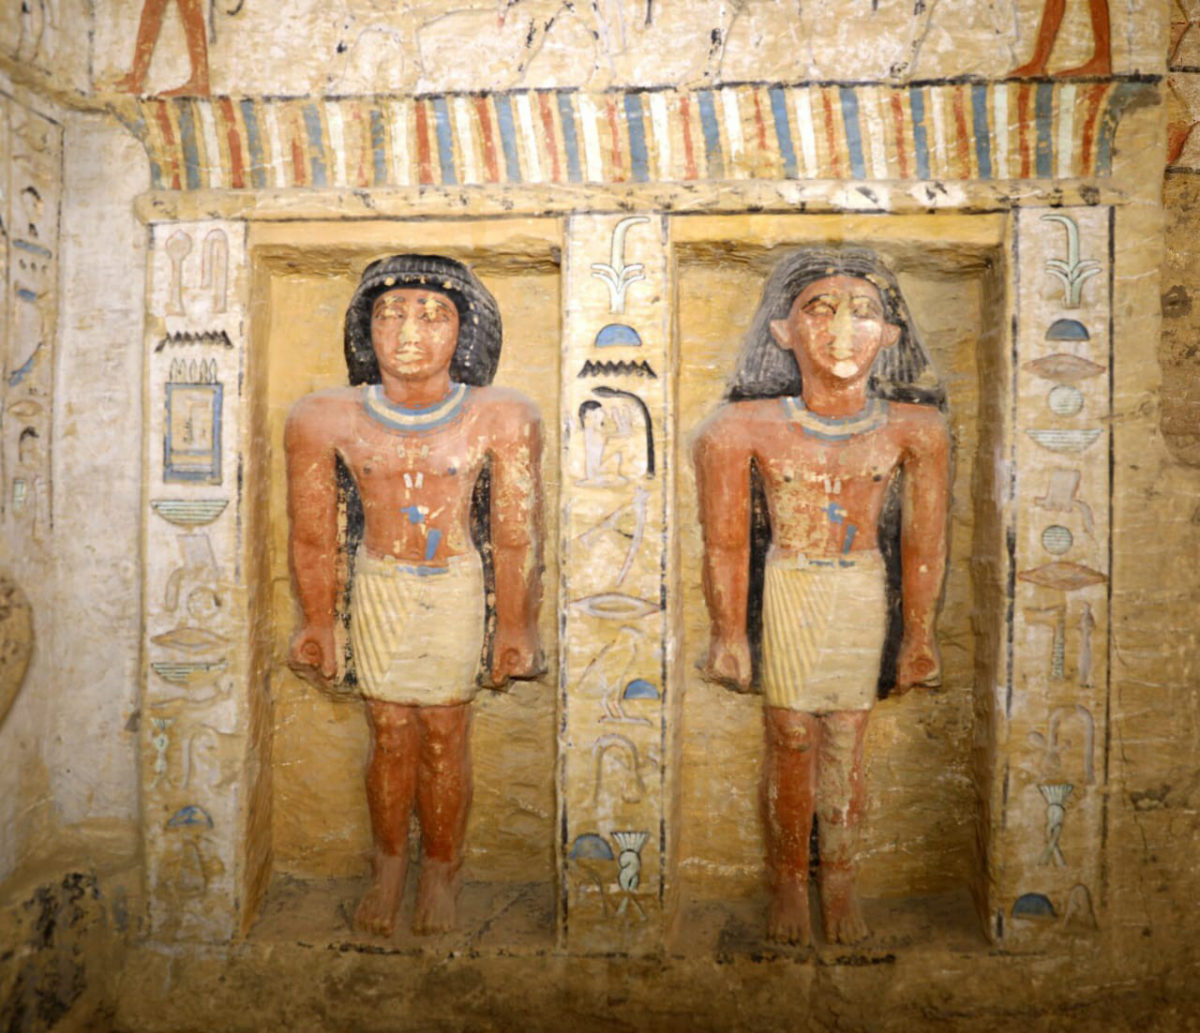 Άποψη του τάφου που αποκαλύφθηκε στη νεκρόπολη της Σακάρα (φωτ.: www.egyptologyforum.org).